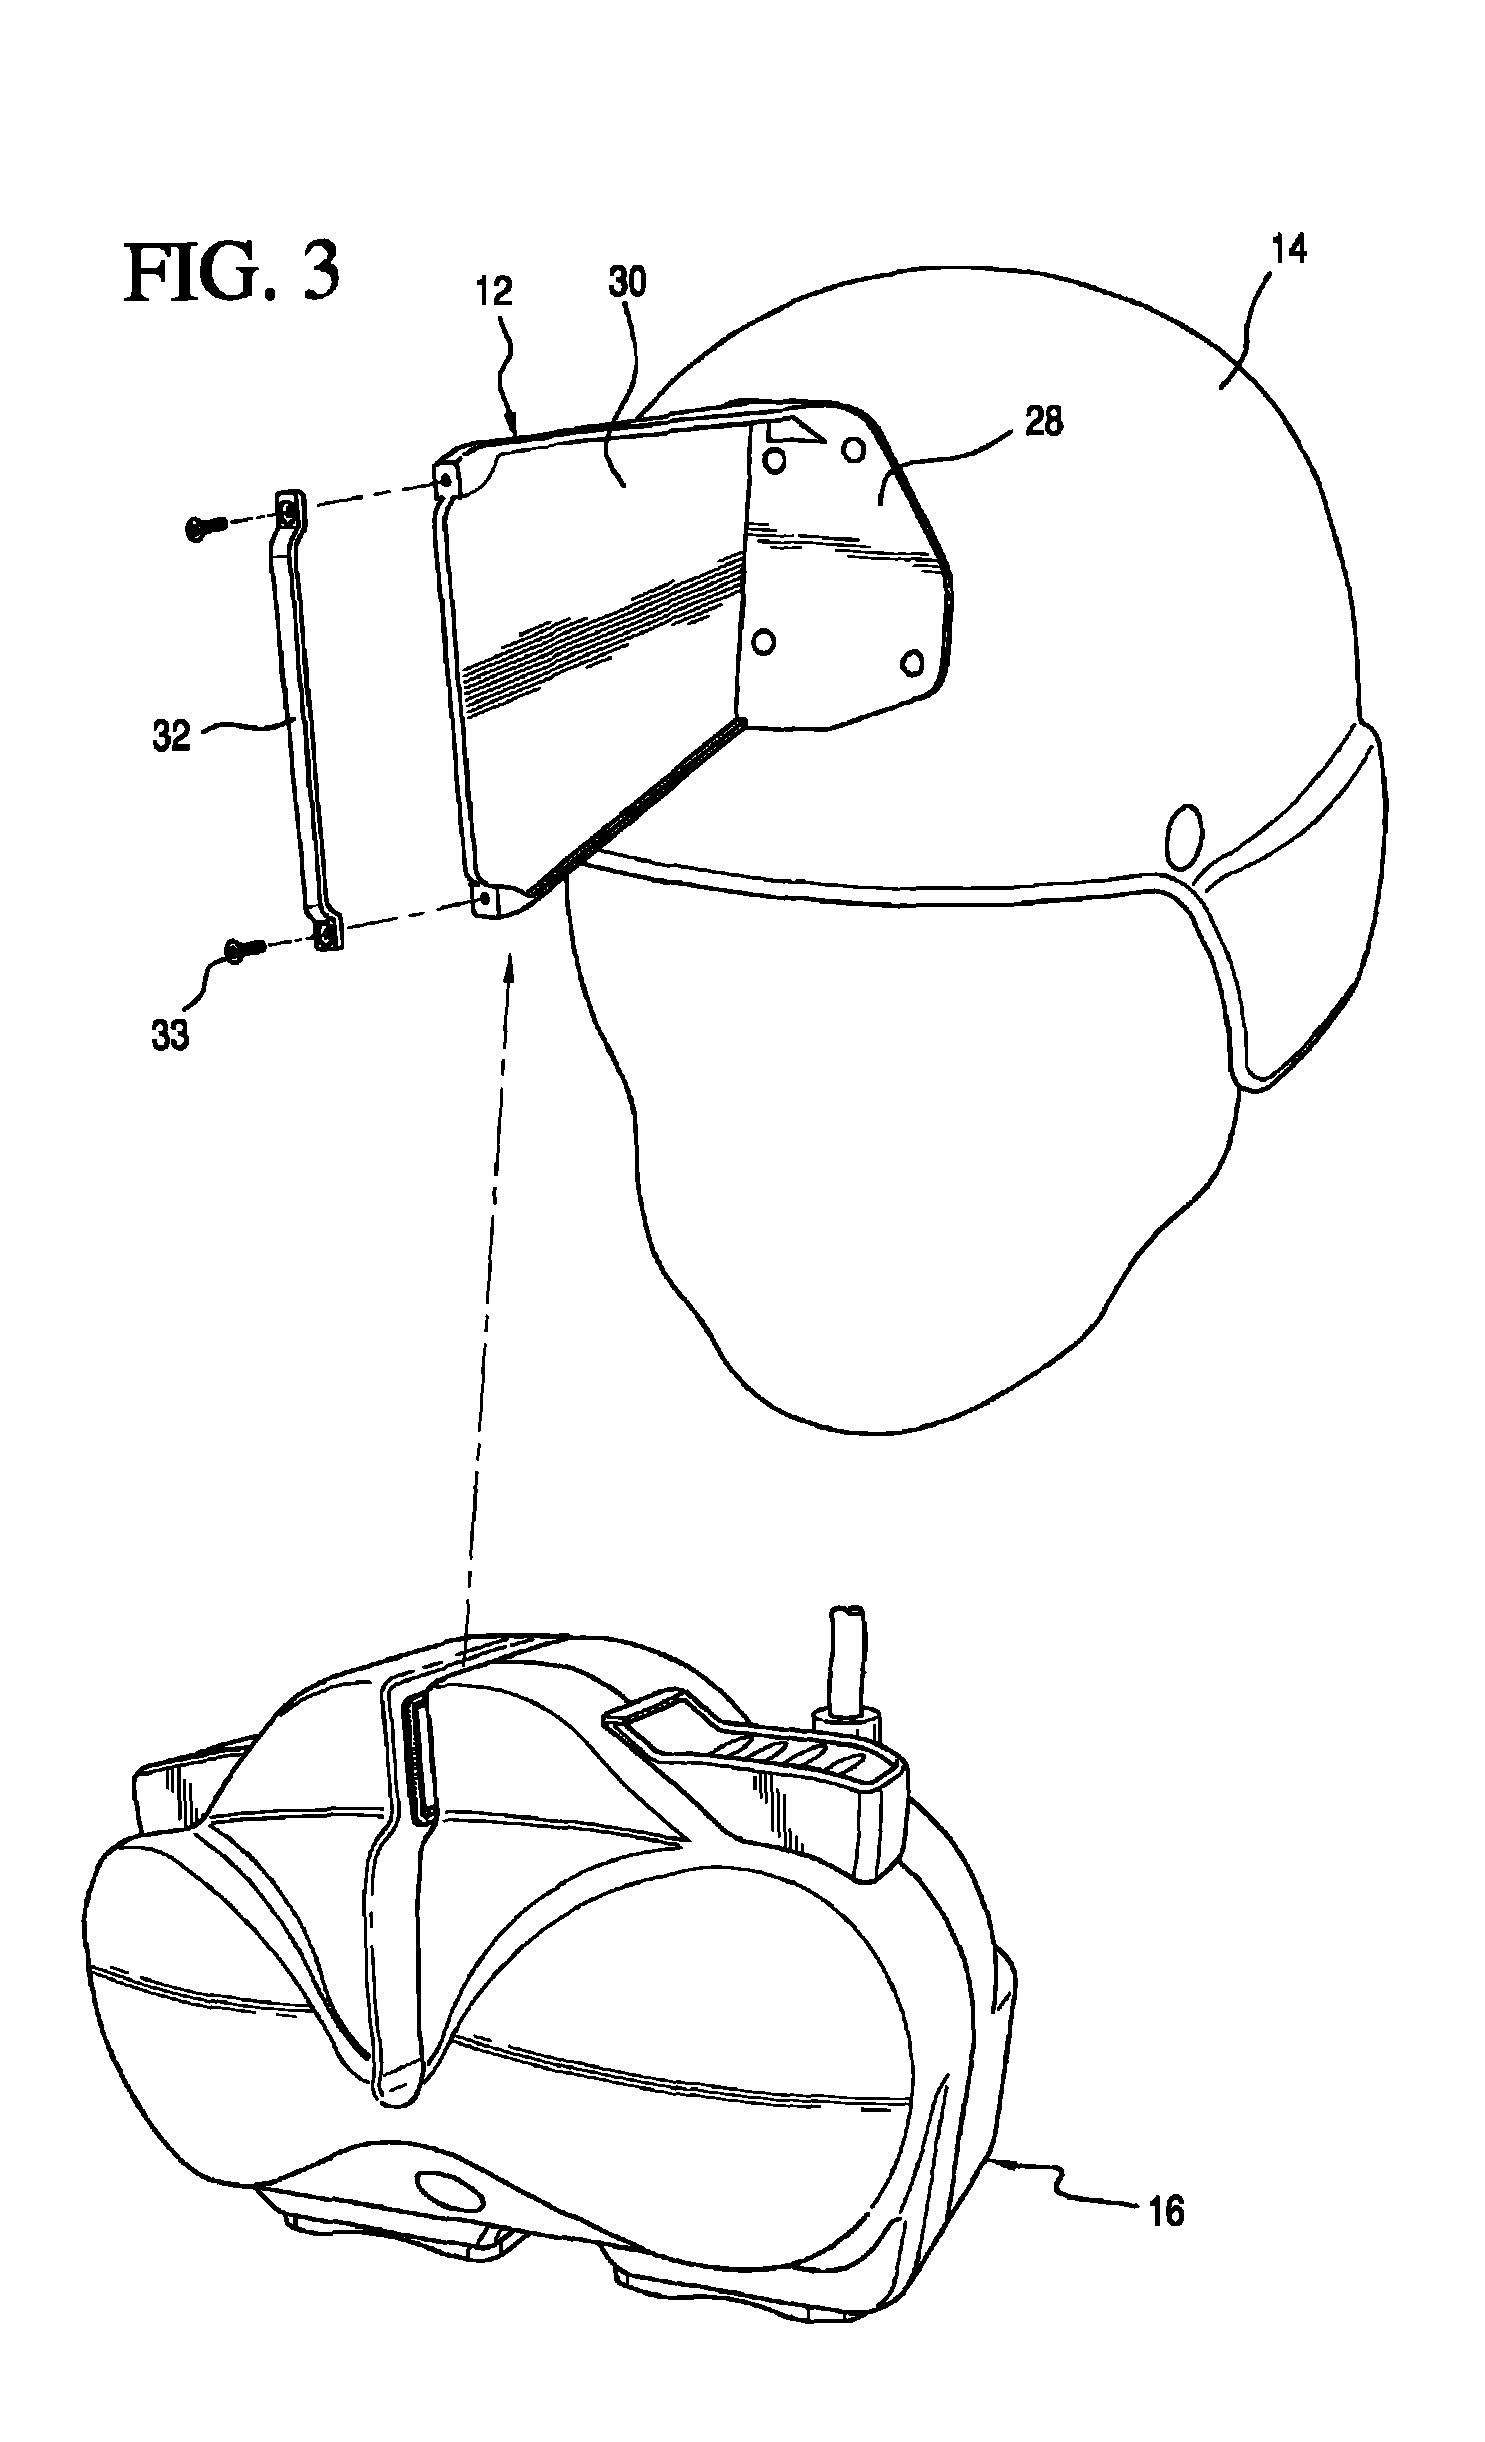 Quick adjustment mechanism for head or helmet mounted displays